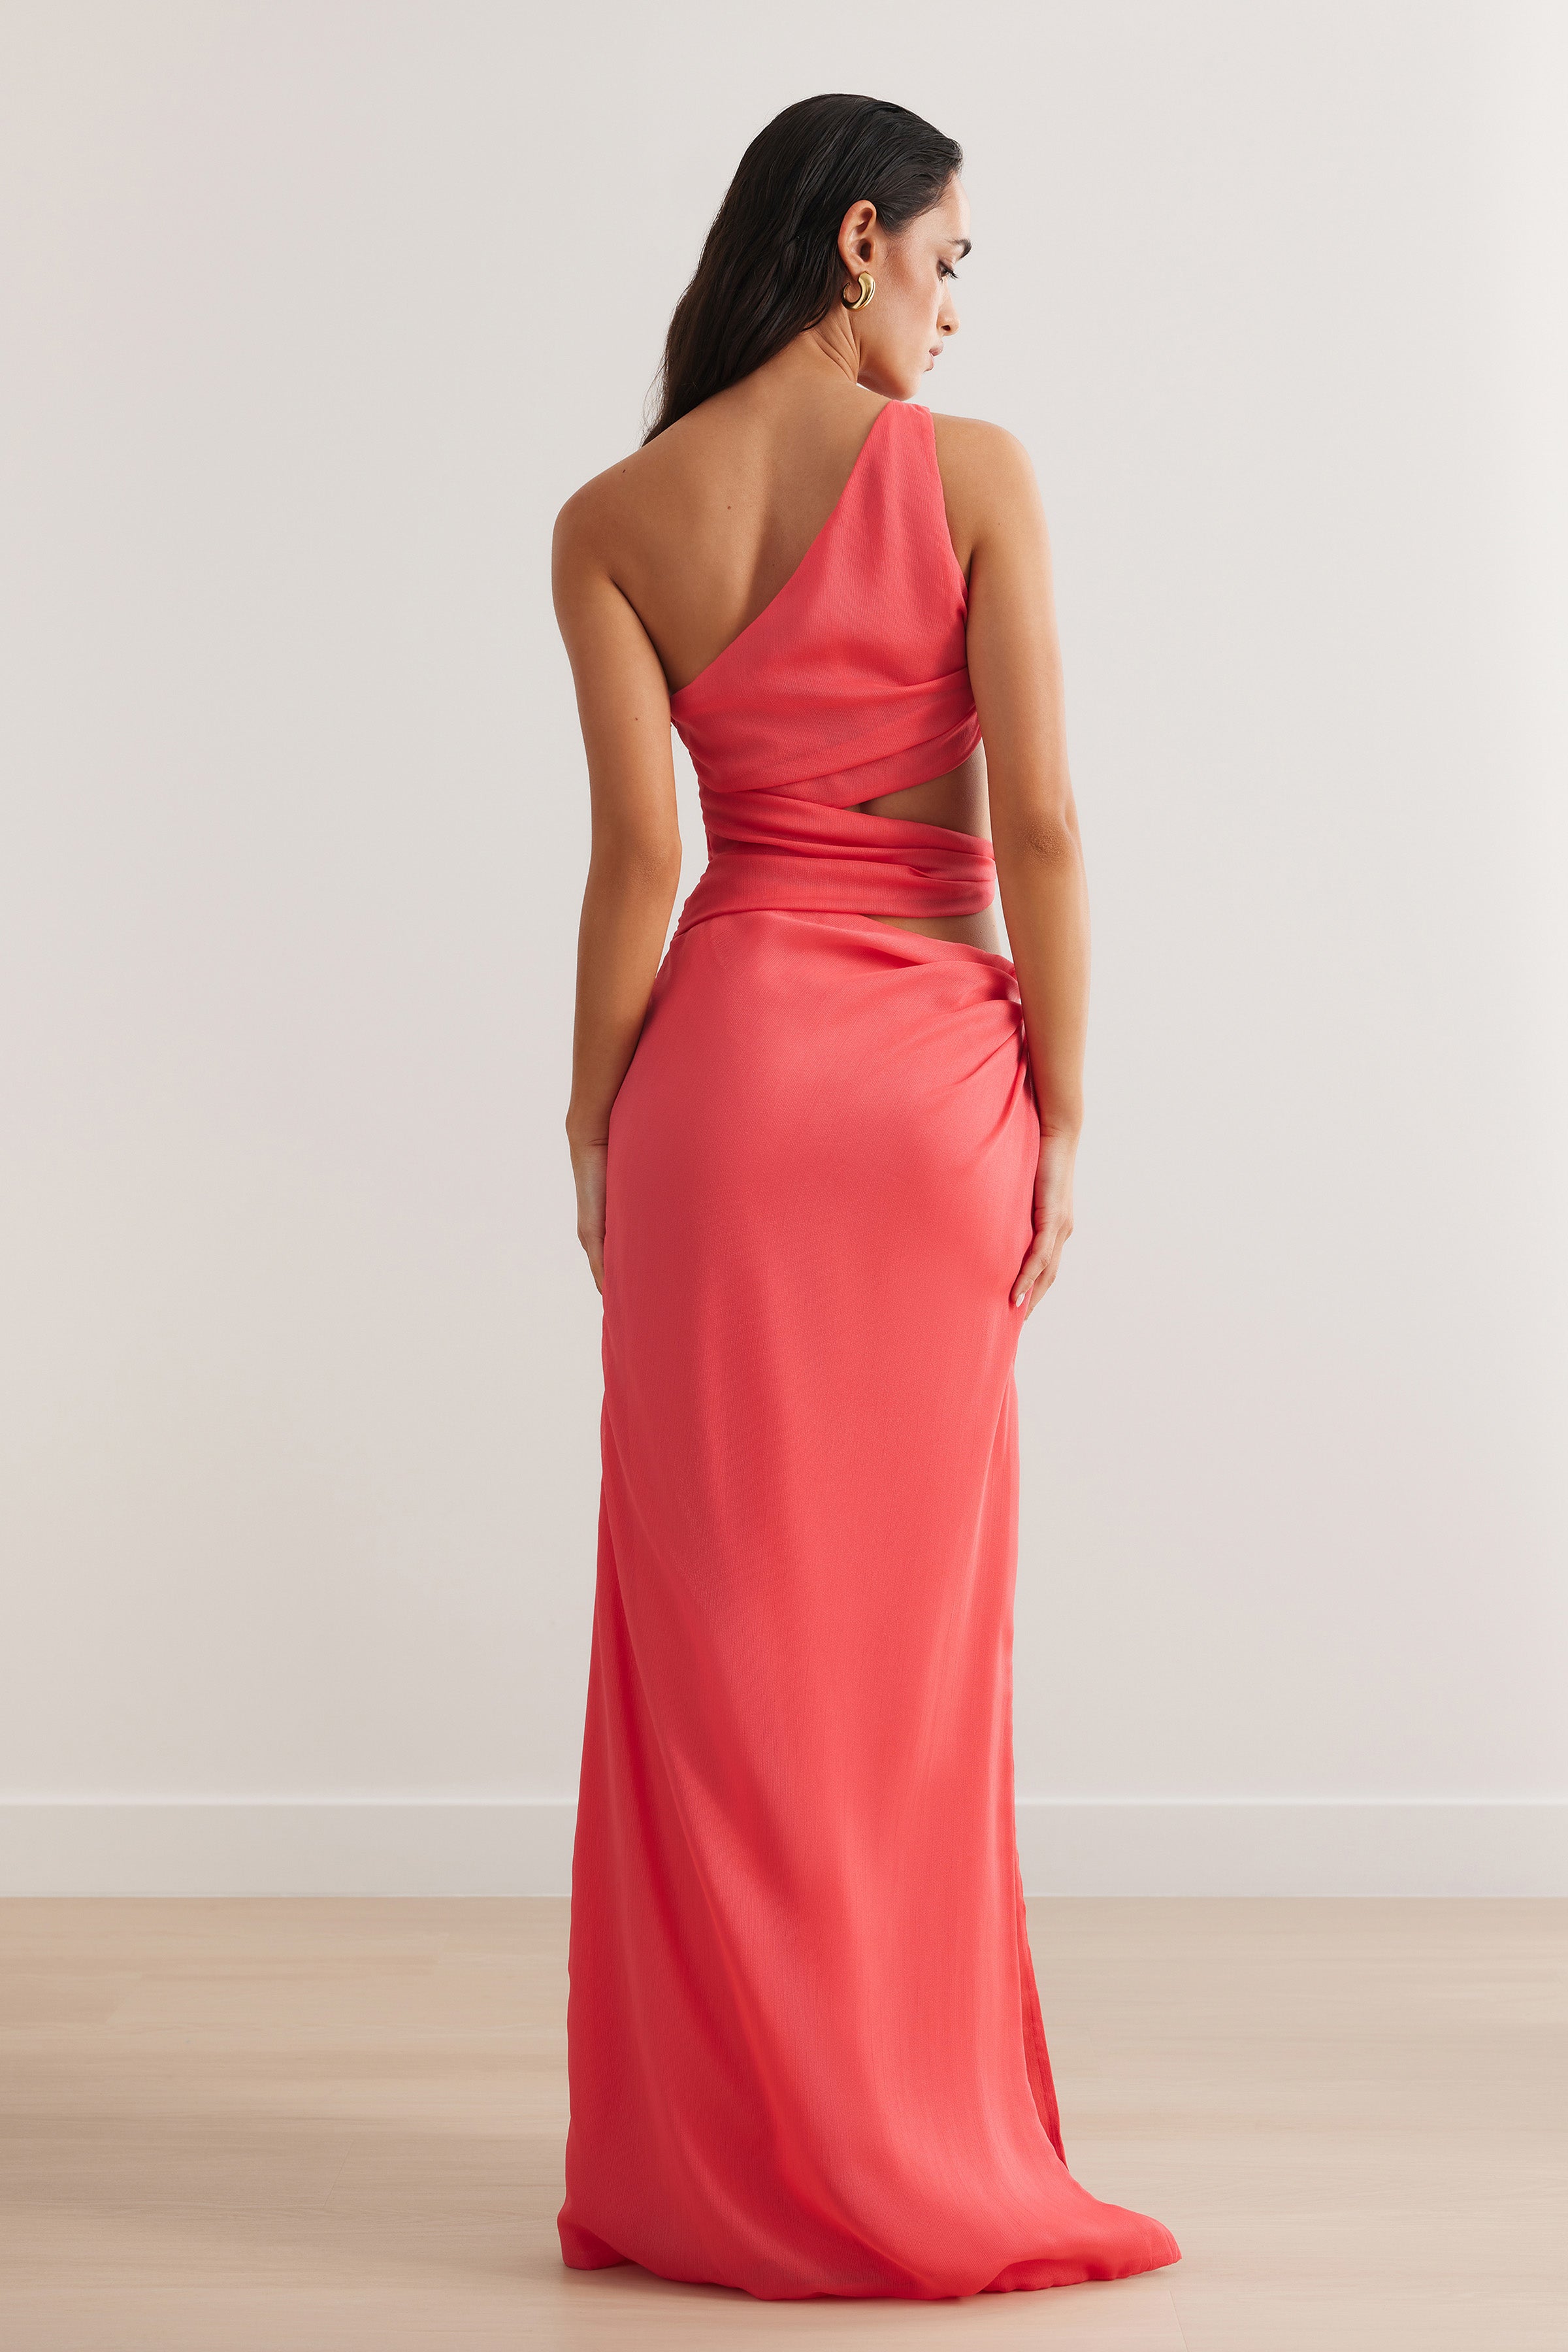 Aurea Dress - Flamingo